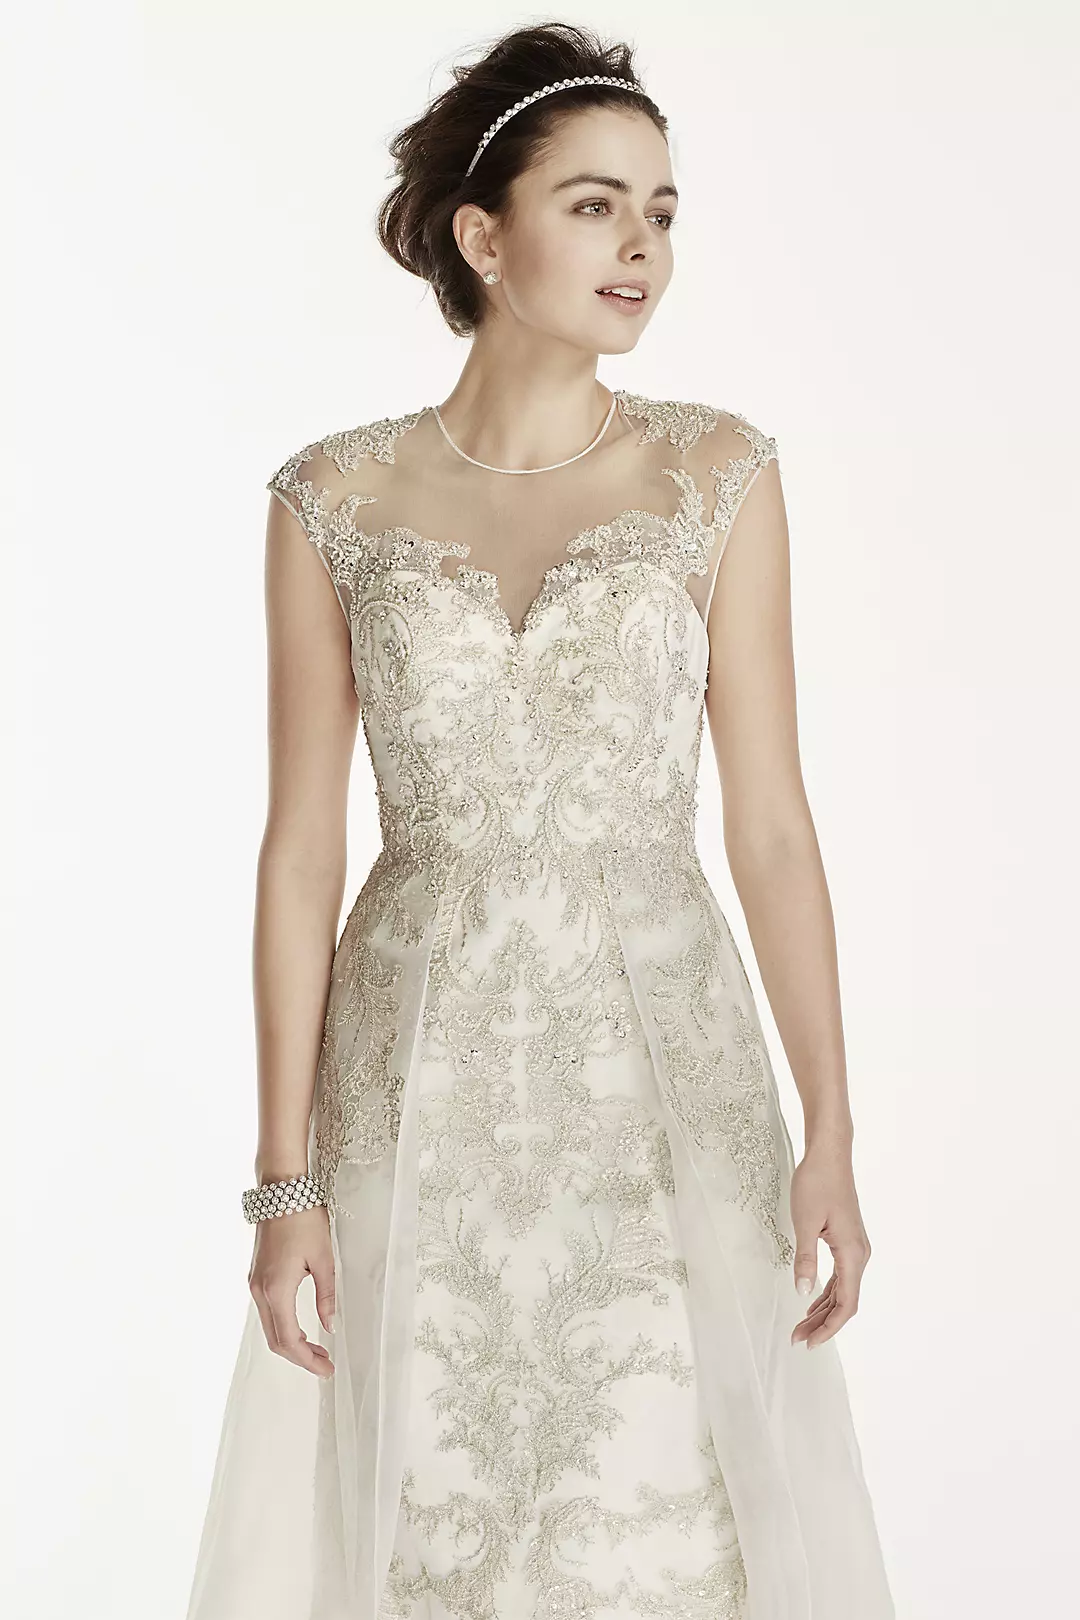 Oleg Cassini Beaded Lace with Tulle Wedding Dress Image 3